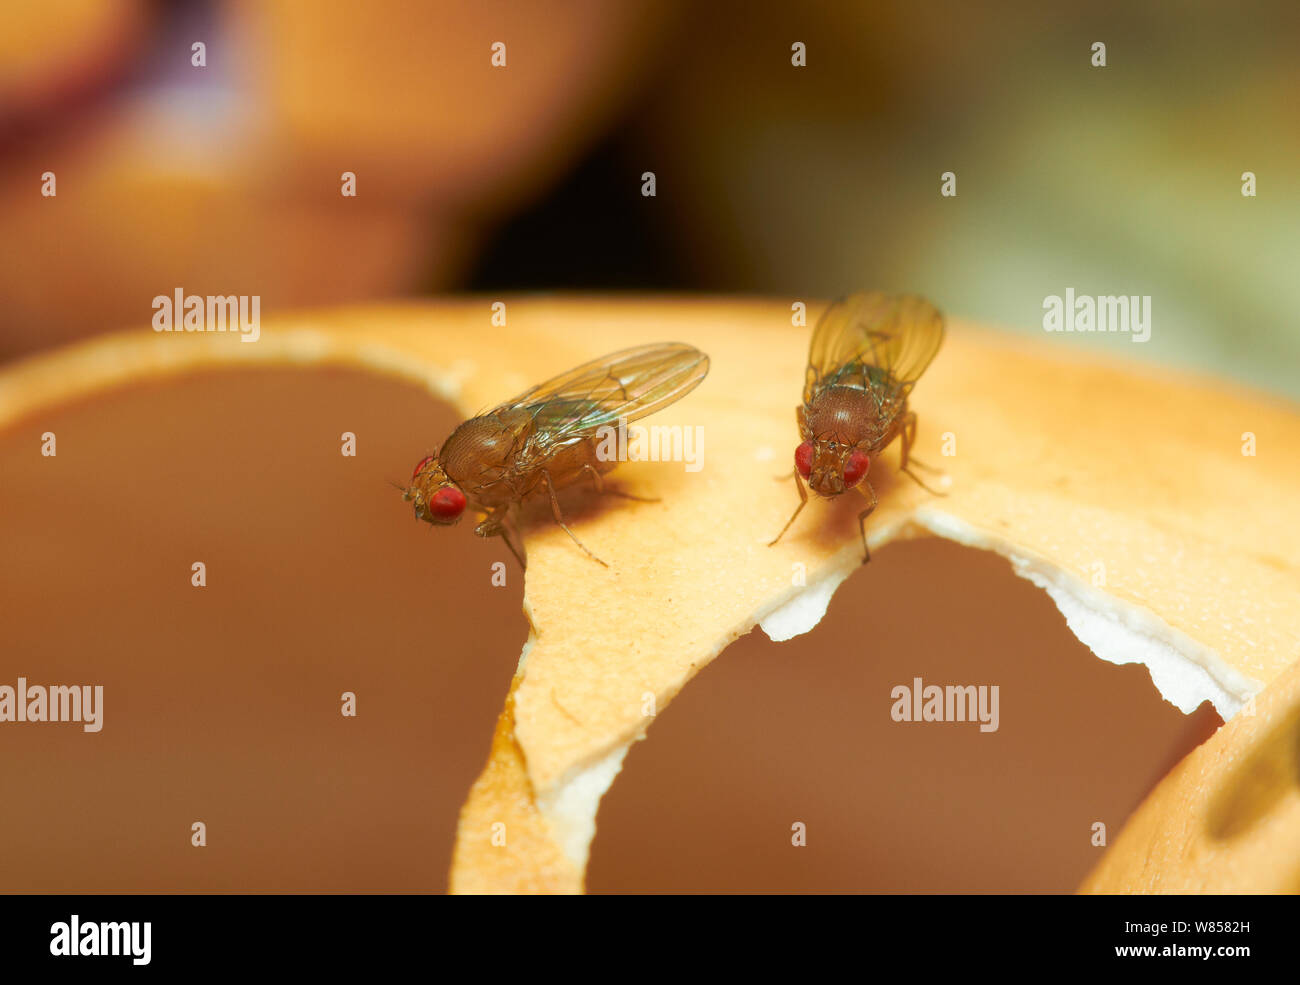 Mosca della frutta (Drosophila melanogaster) su egg-shell, Inghilterra, Regno Unito, Agosto Foto Stock